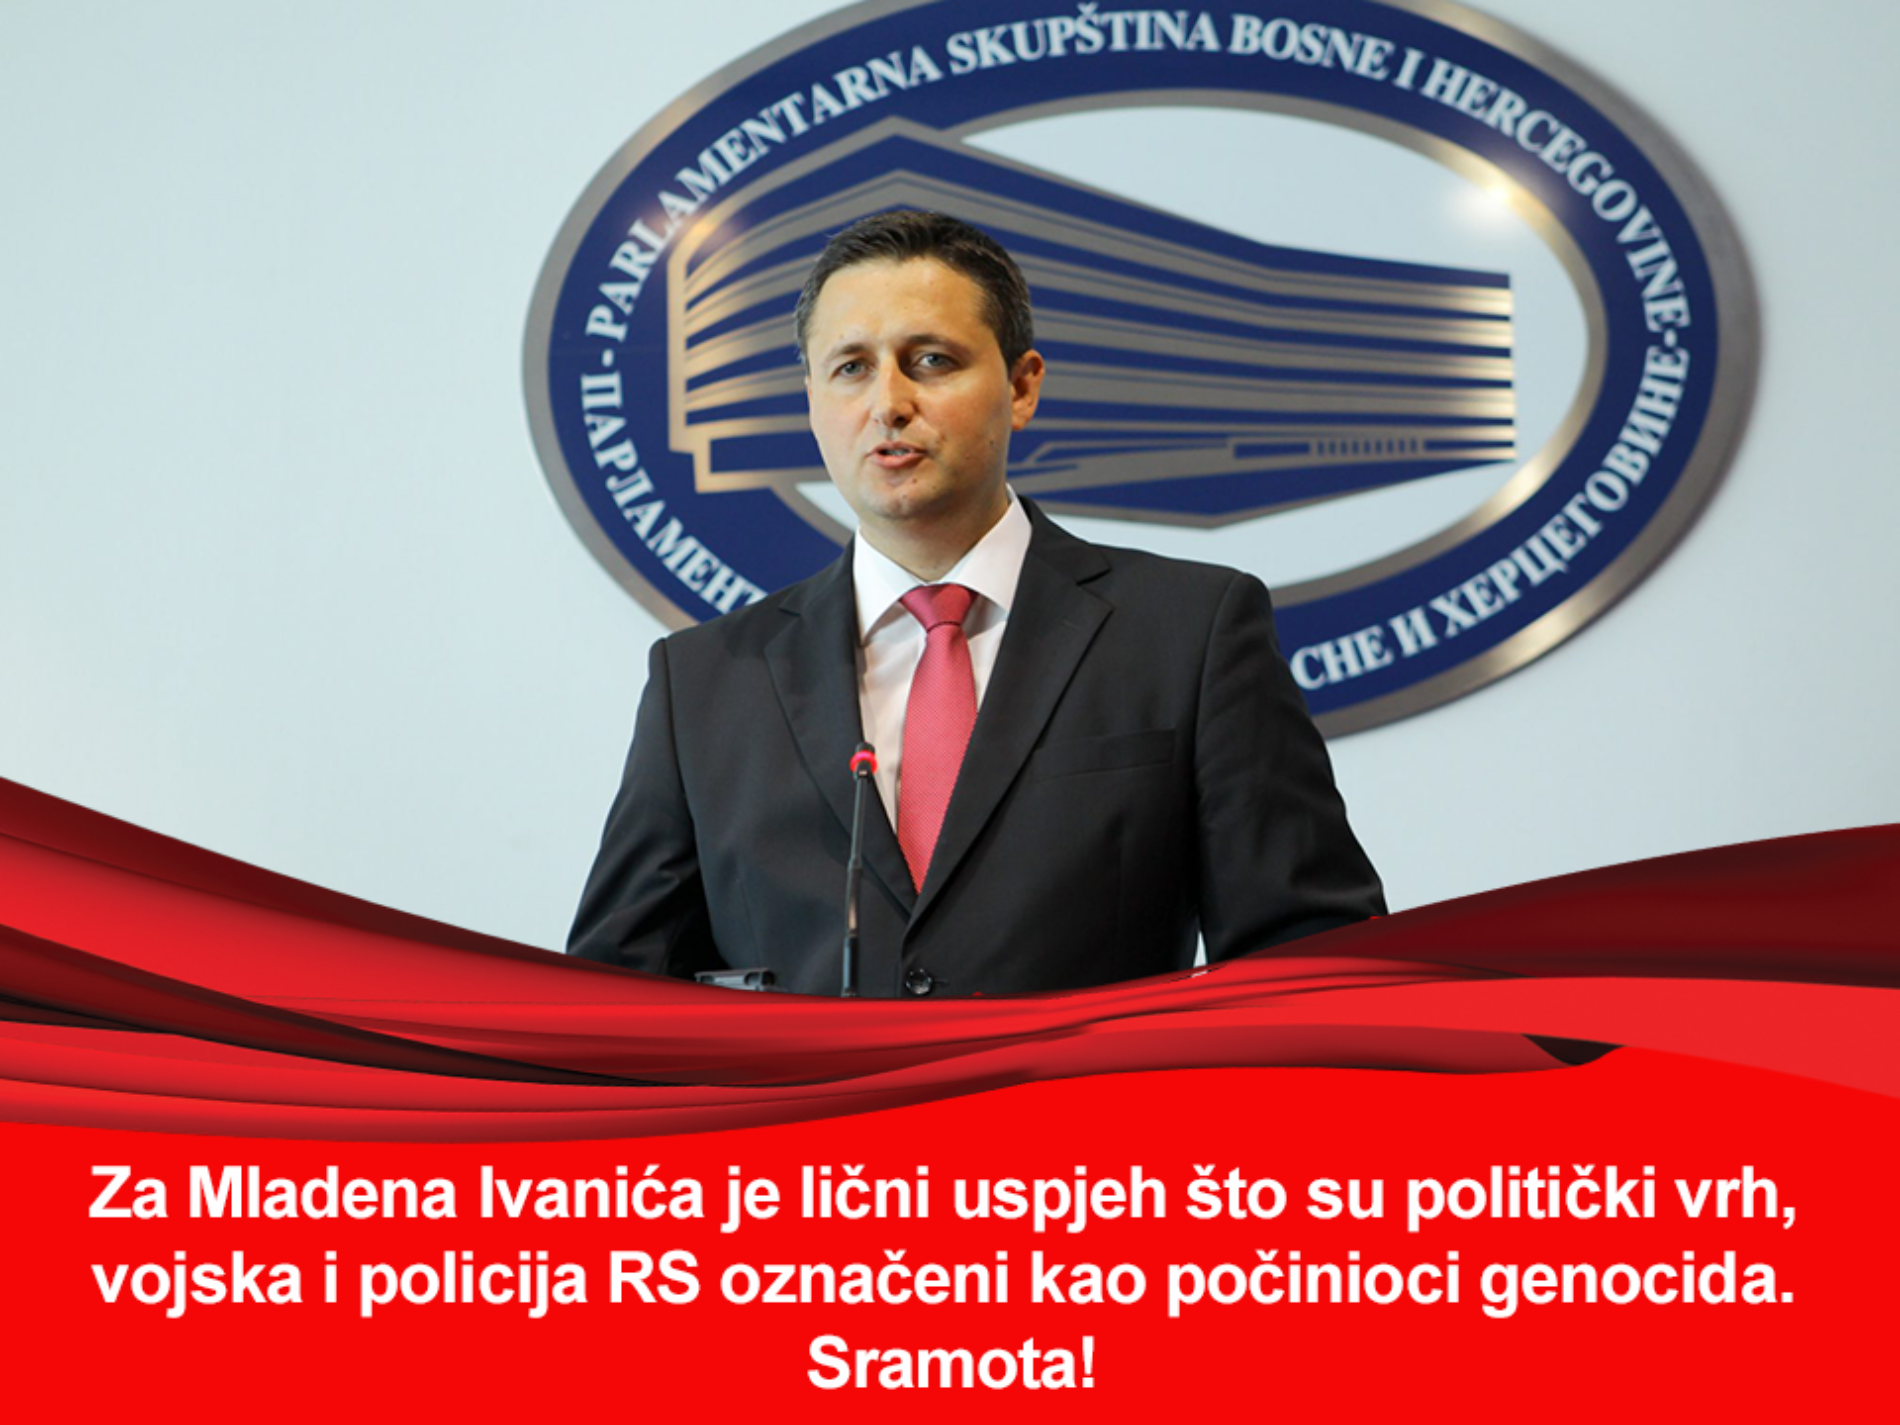 Bećirović: Rješenje nije u međusobnim optužbama, već u pametnom okupljanju progresivnih snaga pod zastavom jedine domovine Bosne i Hercegovine